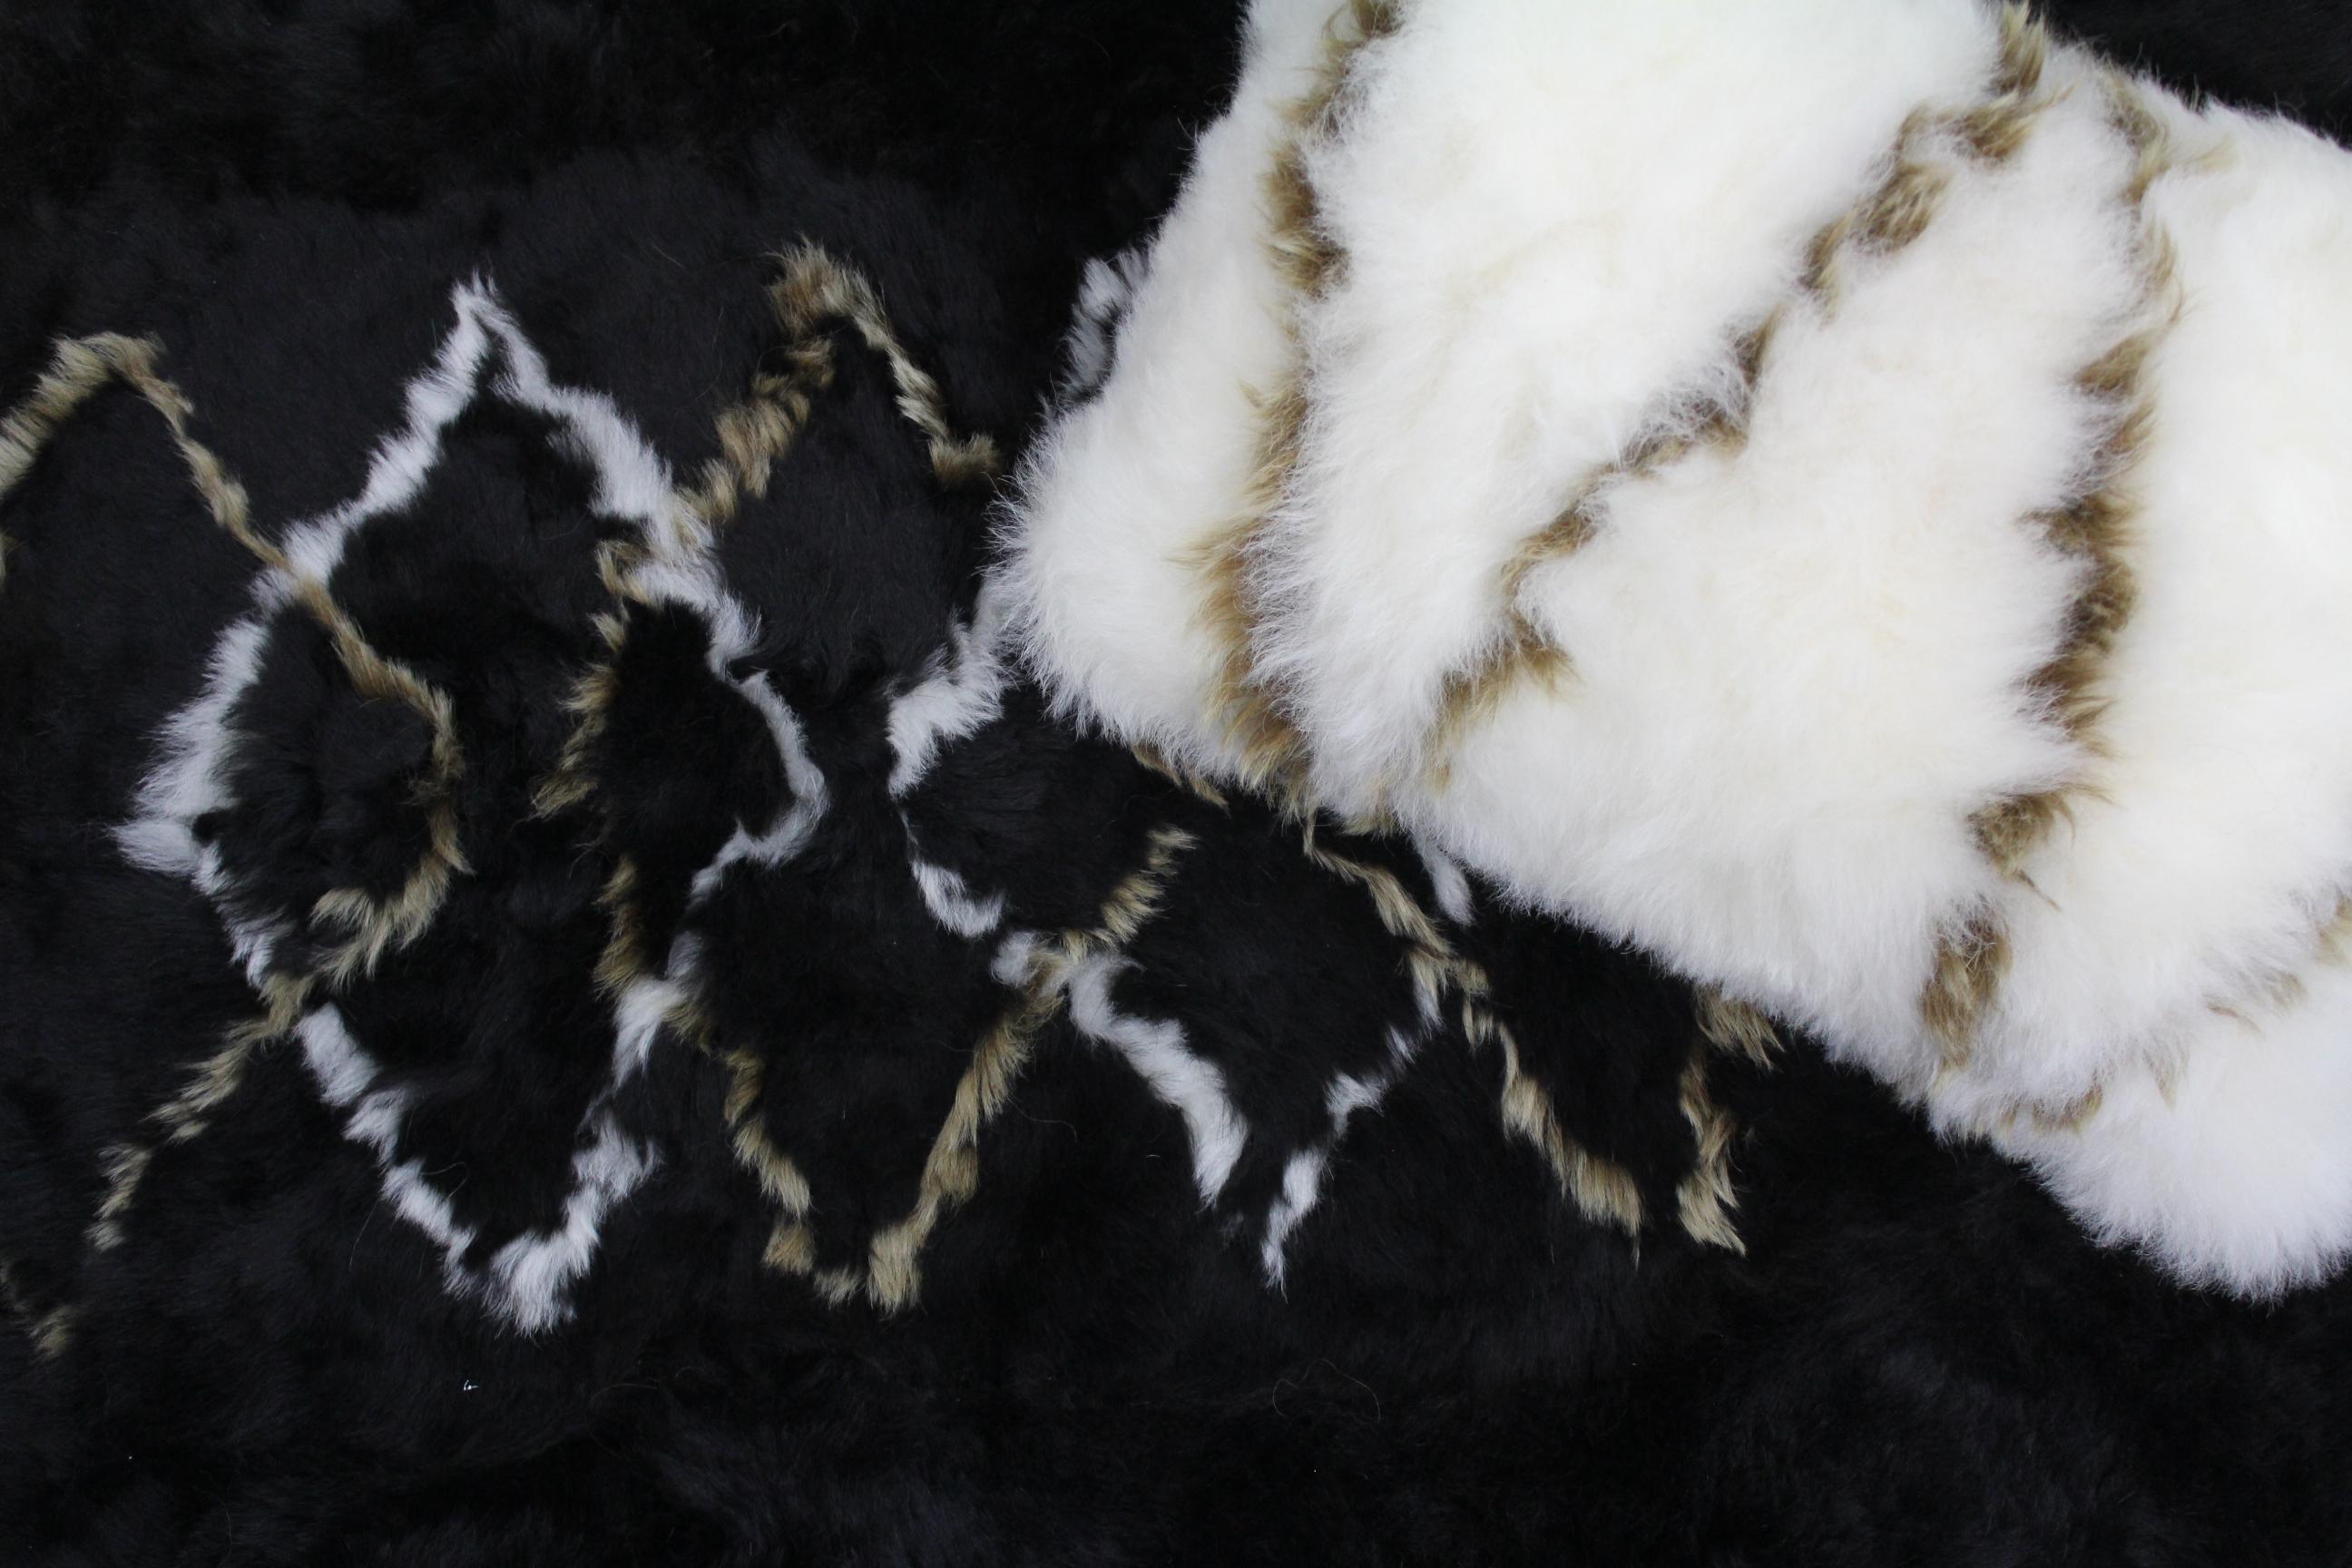 Dieser goldene, diamantene Schafsfellteppich ist ein Unikat. Er wird in sorgfältiger Handarbeit von australischen Kunsthandwerkern aus den feinsten, umweltfreundlichen isländischen Schaffellen hergestellt, um diesen schönen und modernen